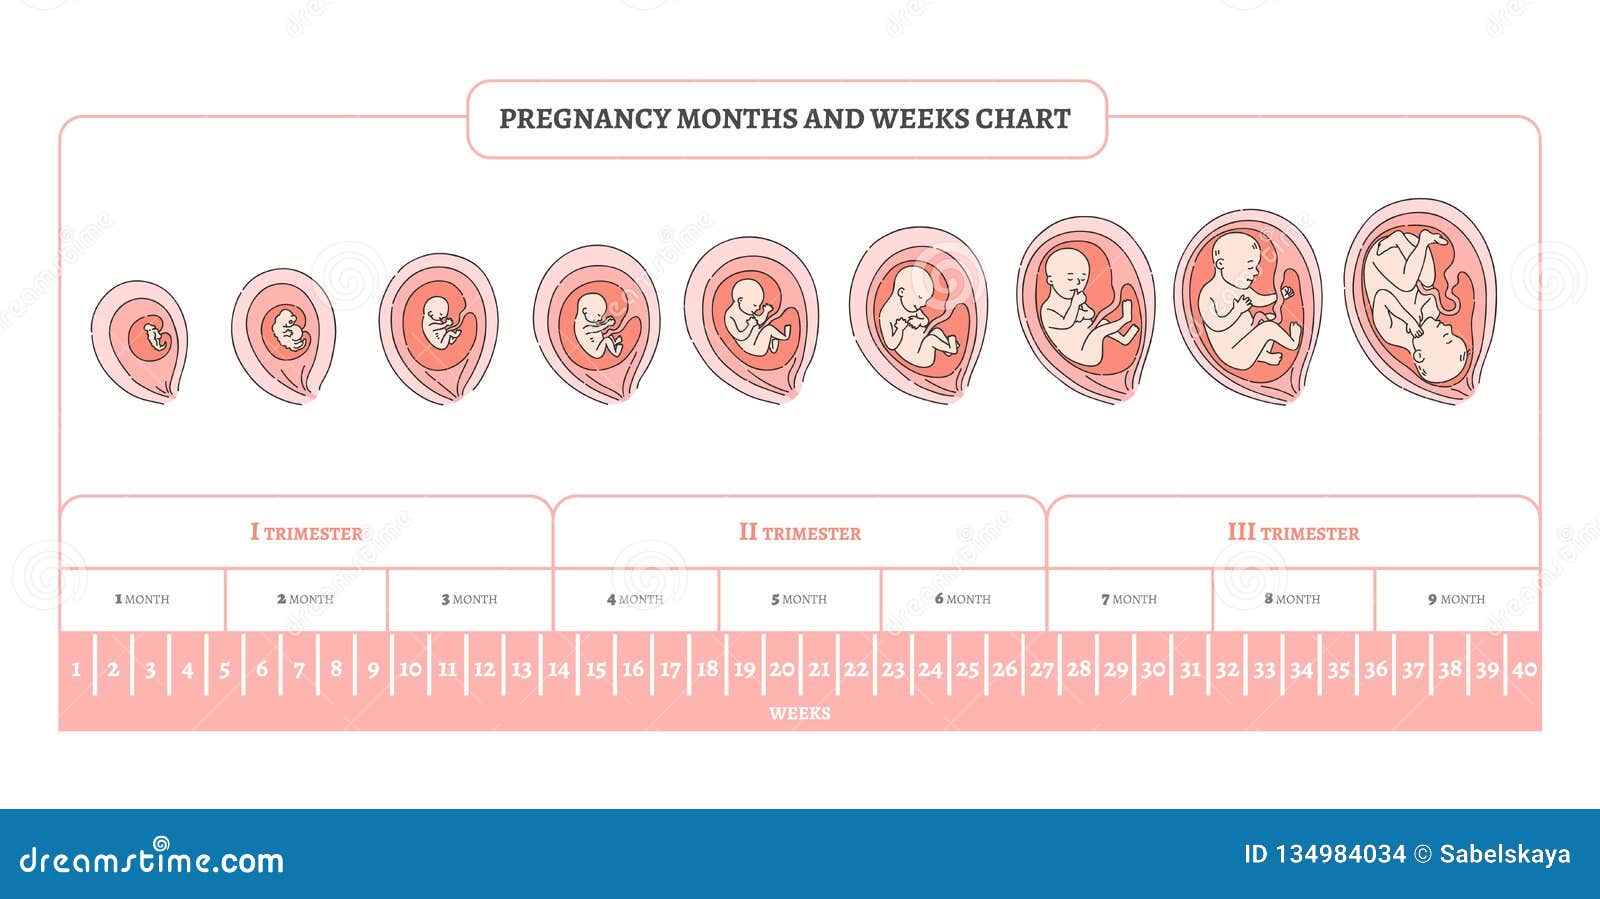 Когда будет первый этап. Периоды развития плода по неделям в картинках. Стадии формирования плода по неделям беременности. Триместры беременности по неделям и месяцам таблица. Периоды развития плода по триместрам.